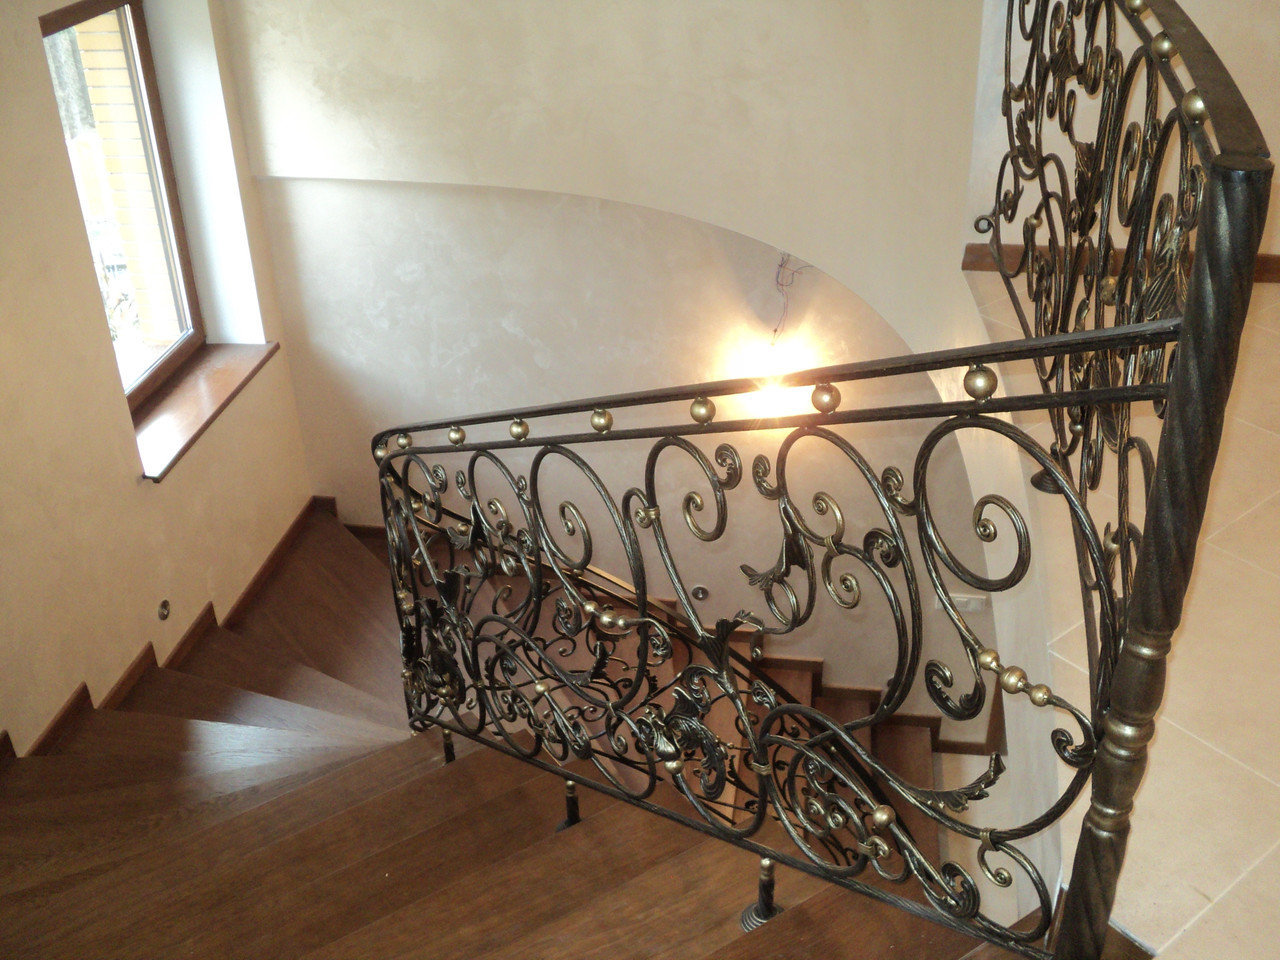 Перила кованые для лестницы в частном доме фото внутри дома